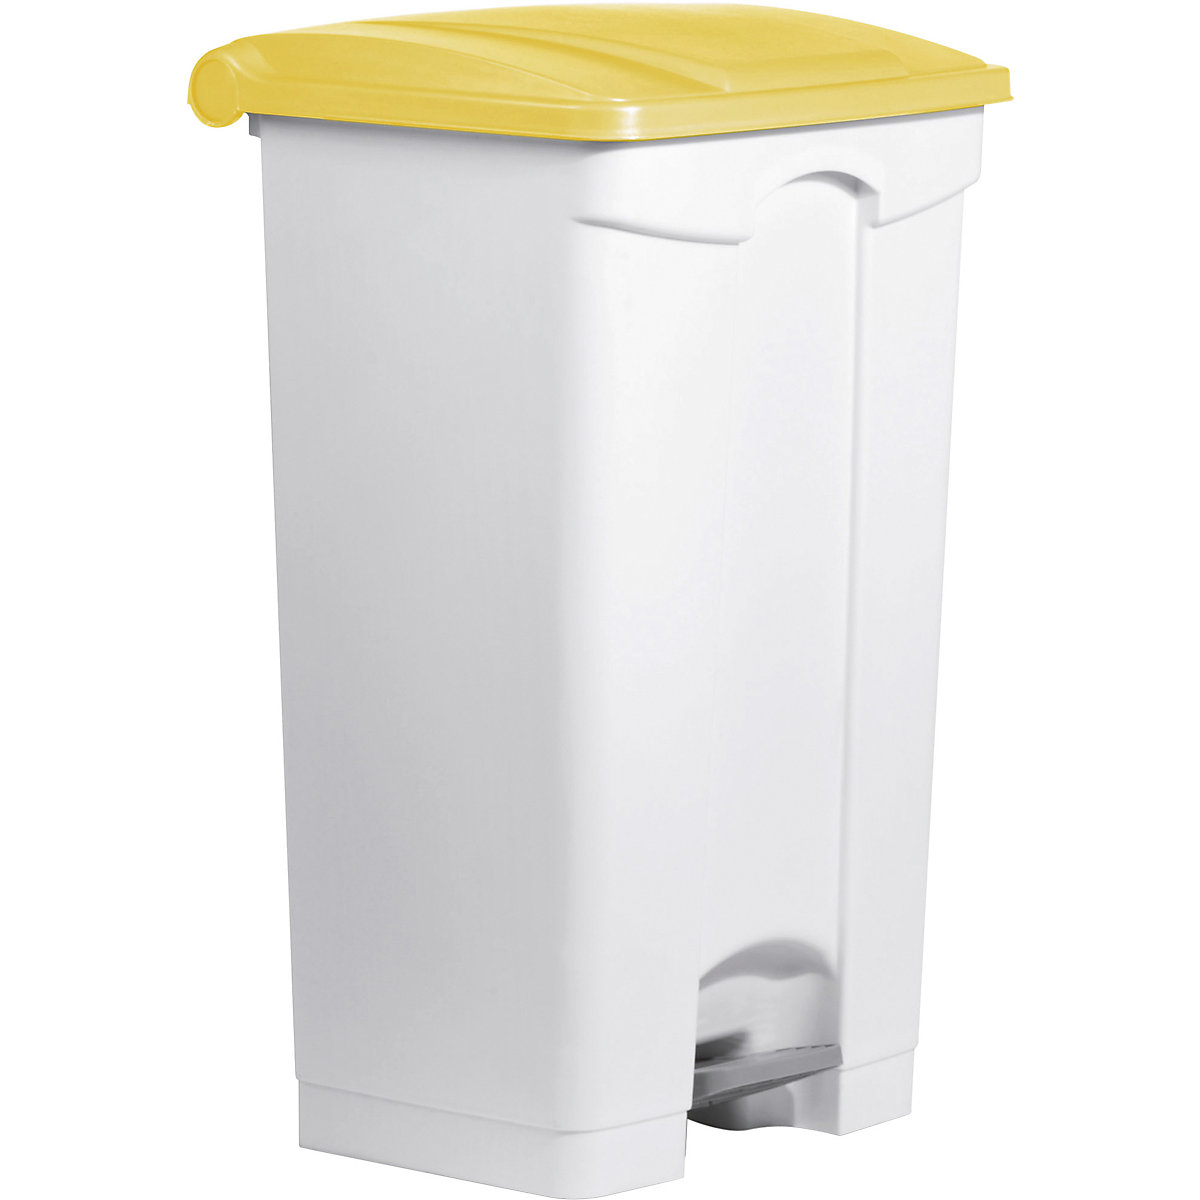 Pedal bin – helit, capacity 90 l, WxHxD 500 x 830 x 410 mm, white, yellow lid-4